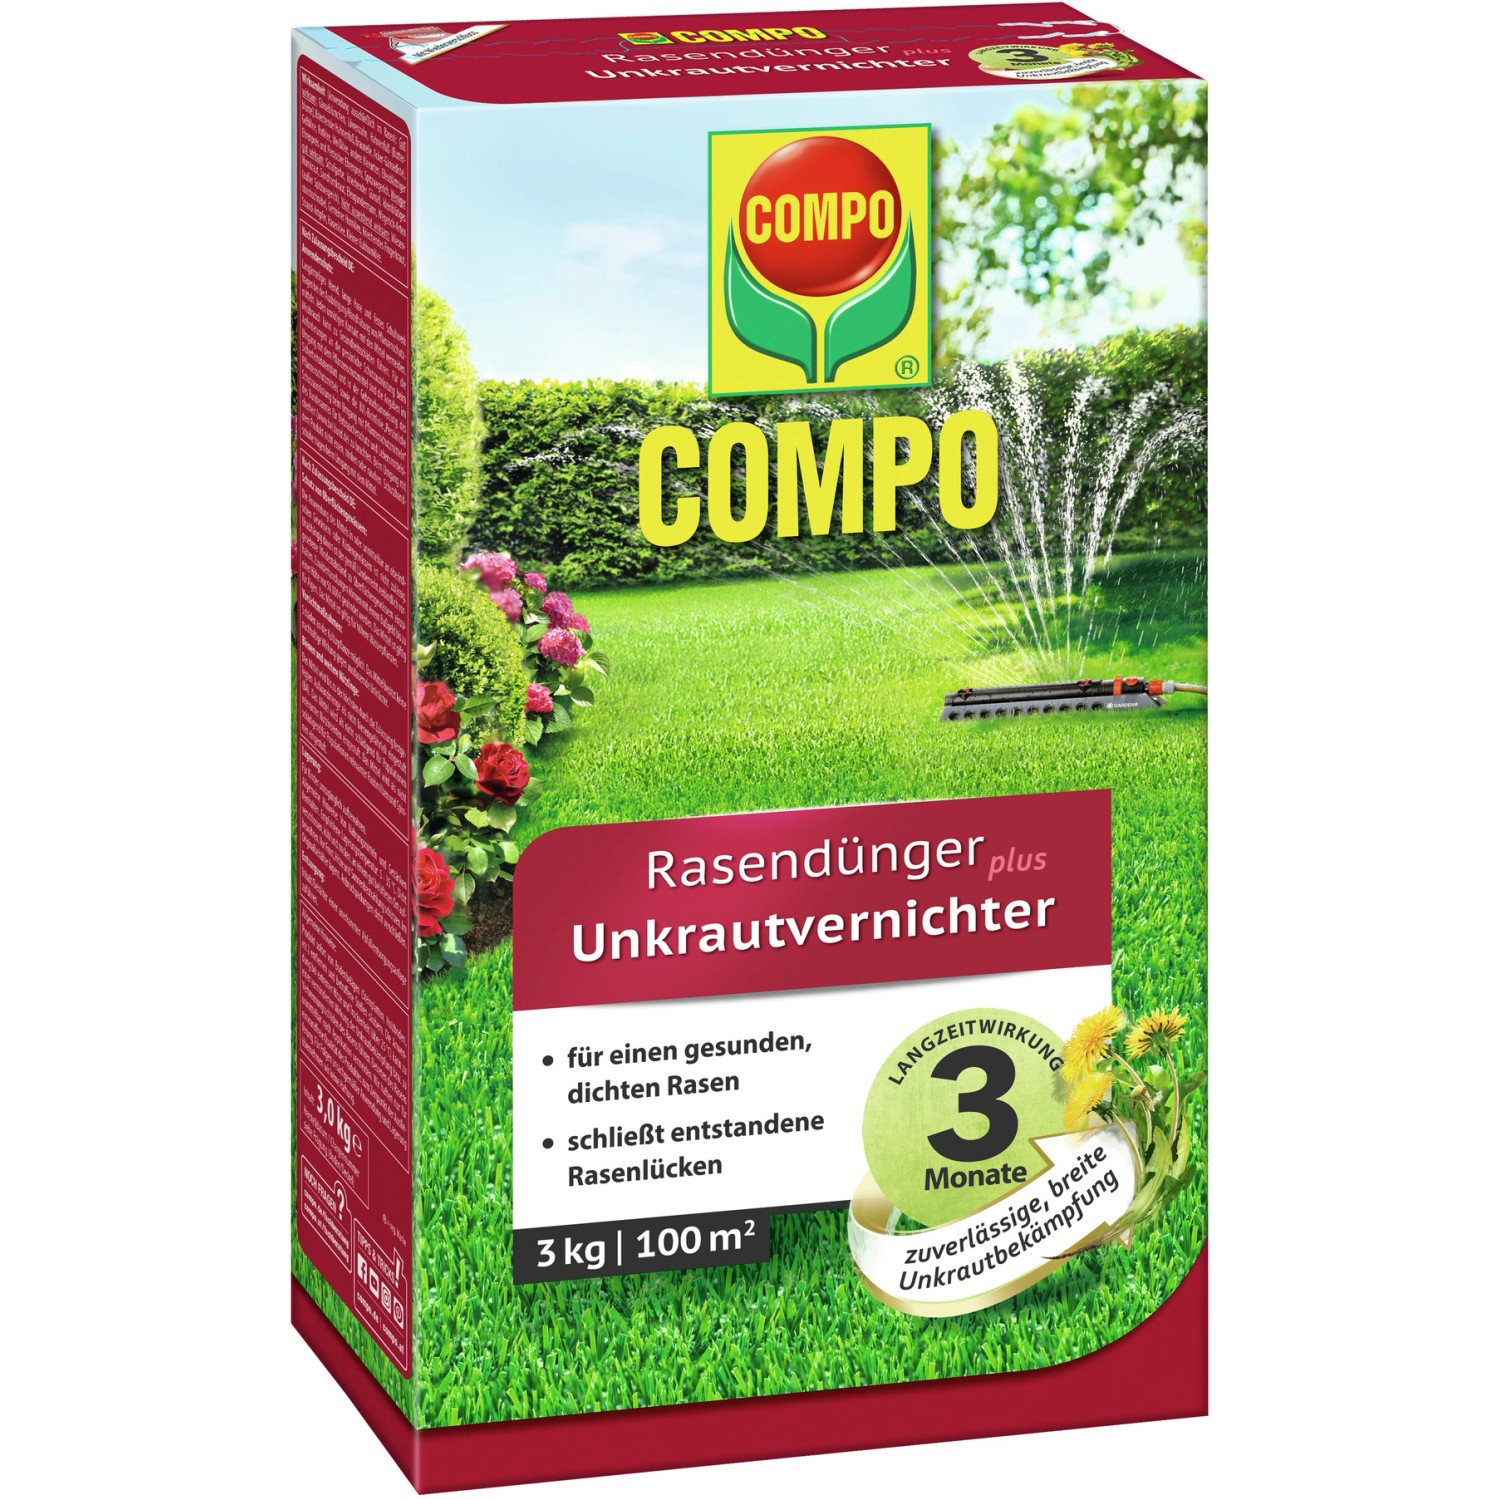 Compo Rasendünger plus Unkrautvernichter 3 kg für 100 m² von Compo